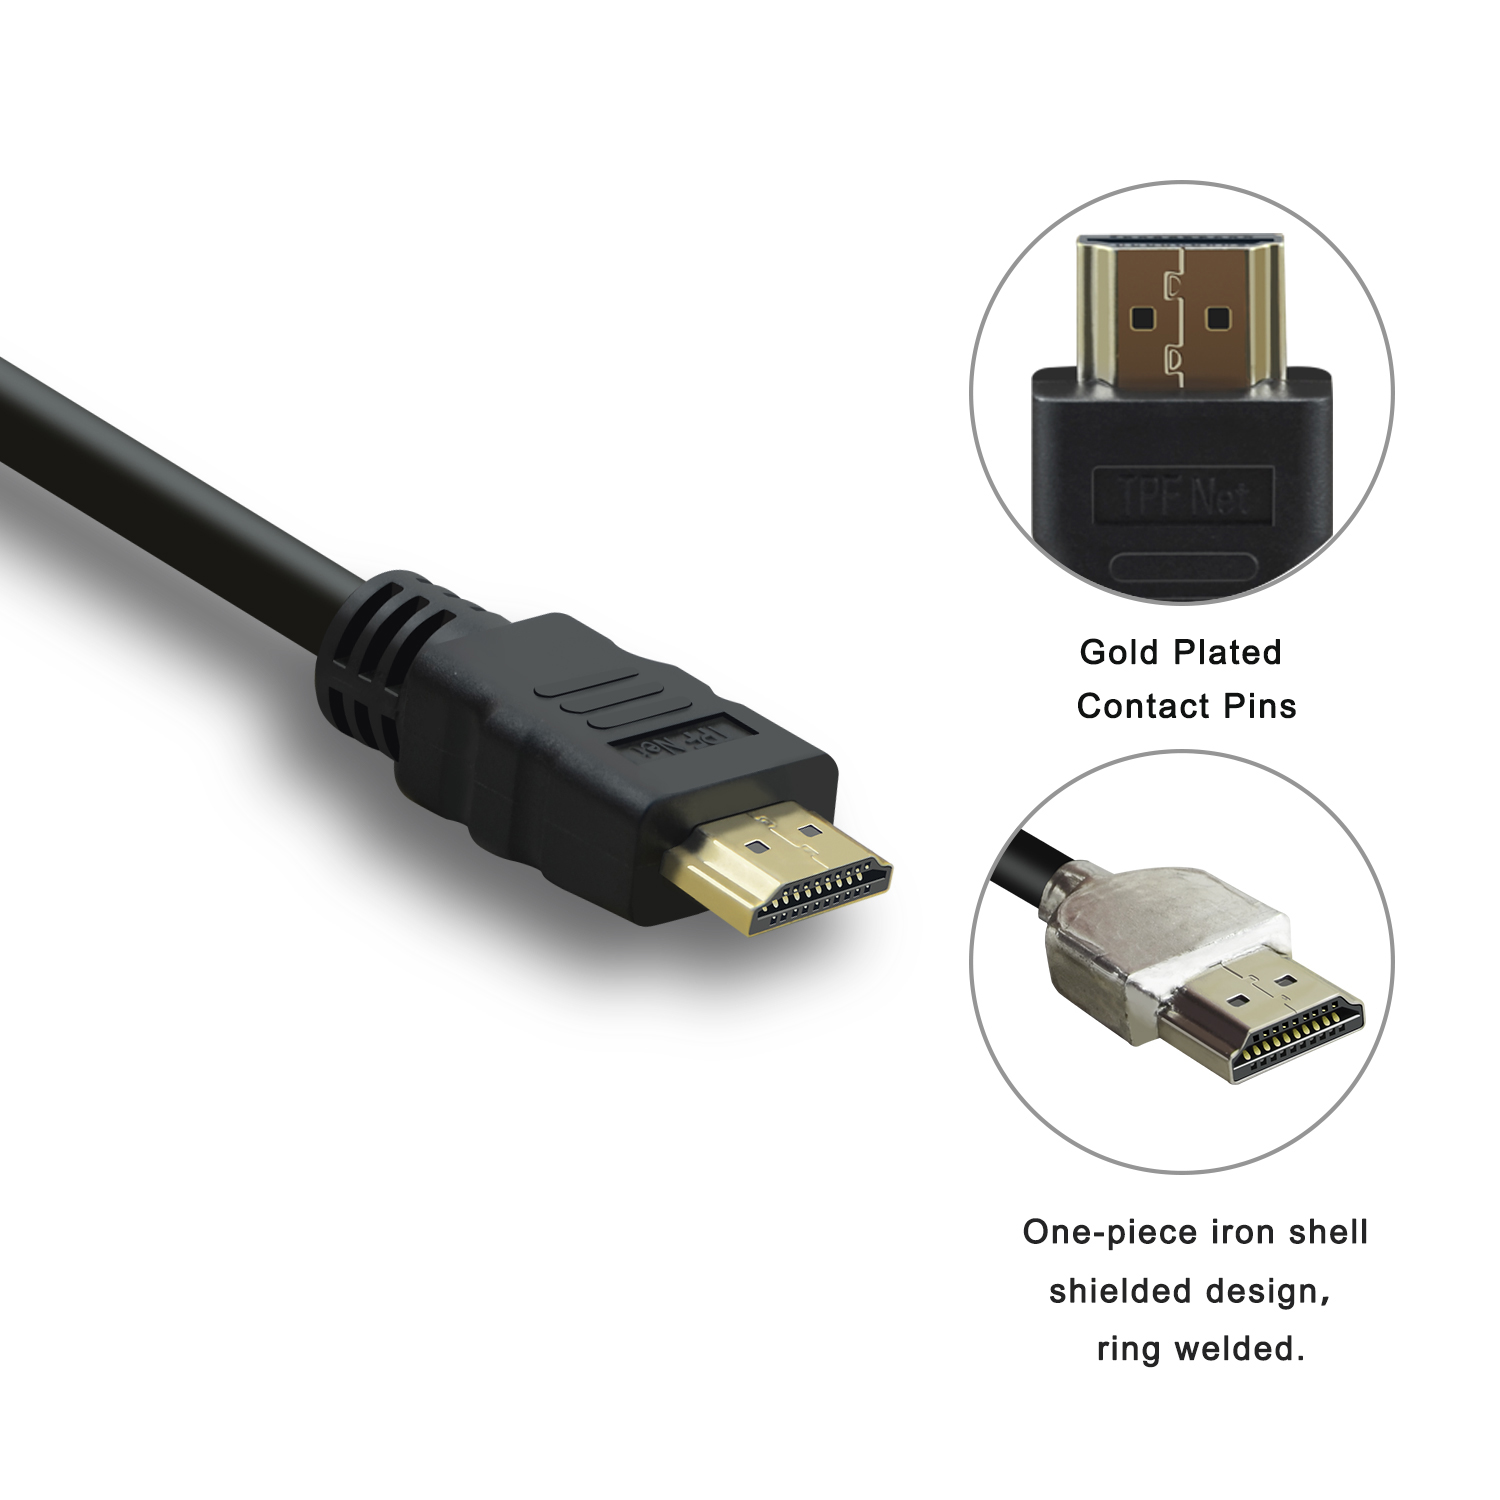 TPFNET 3er Pack Premium 8K, 3m HD, mit HDMI-Kabel schwarz, HDMI-Kabel, Ultra Ethernet, abwärtskompatibel, Schwarz